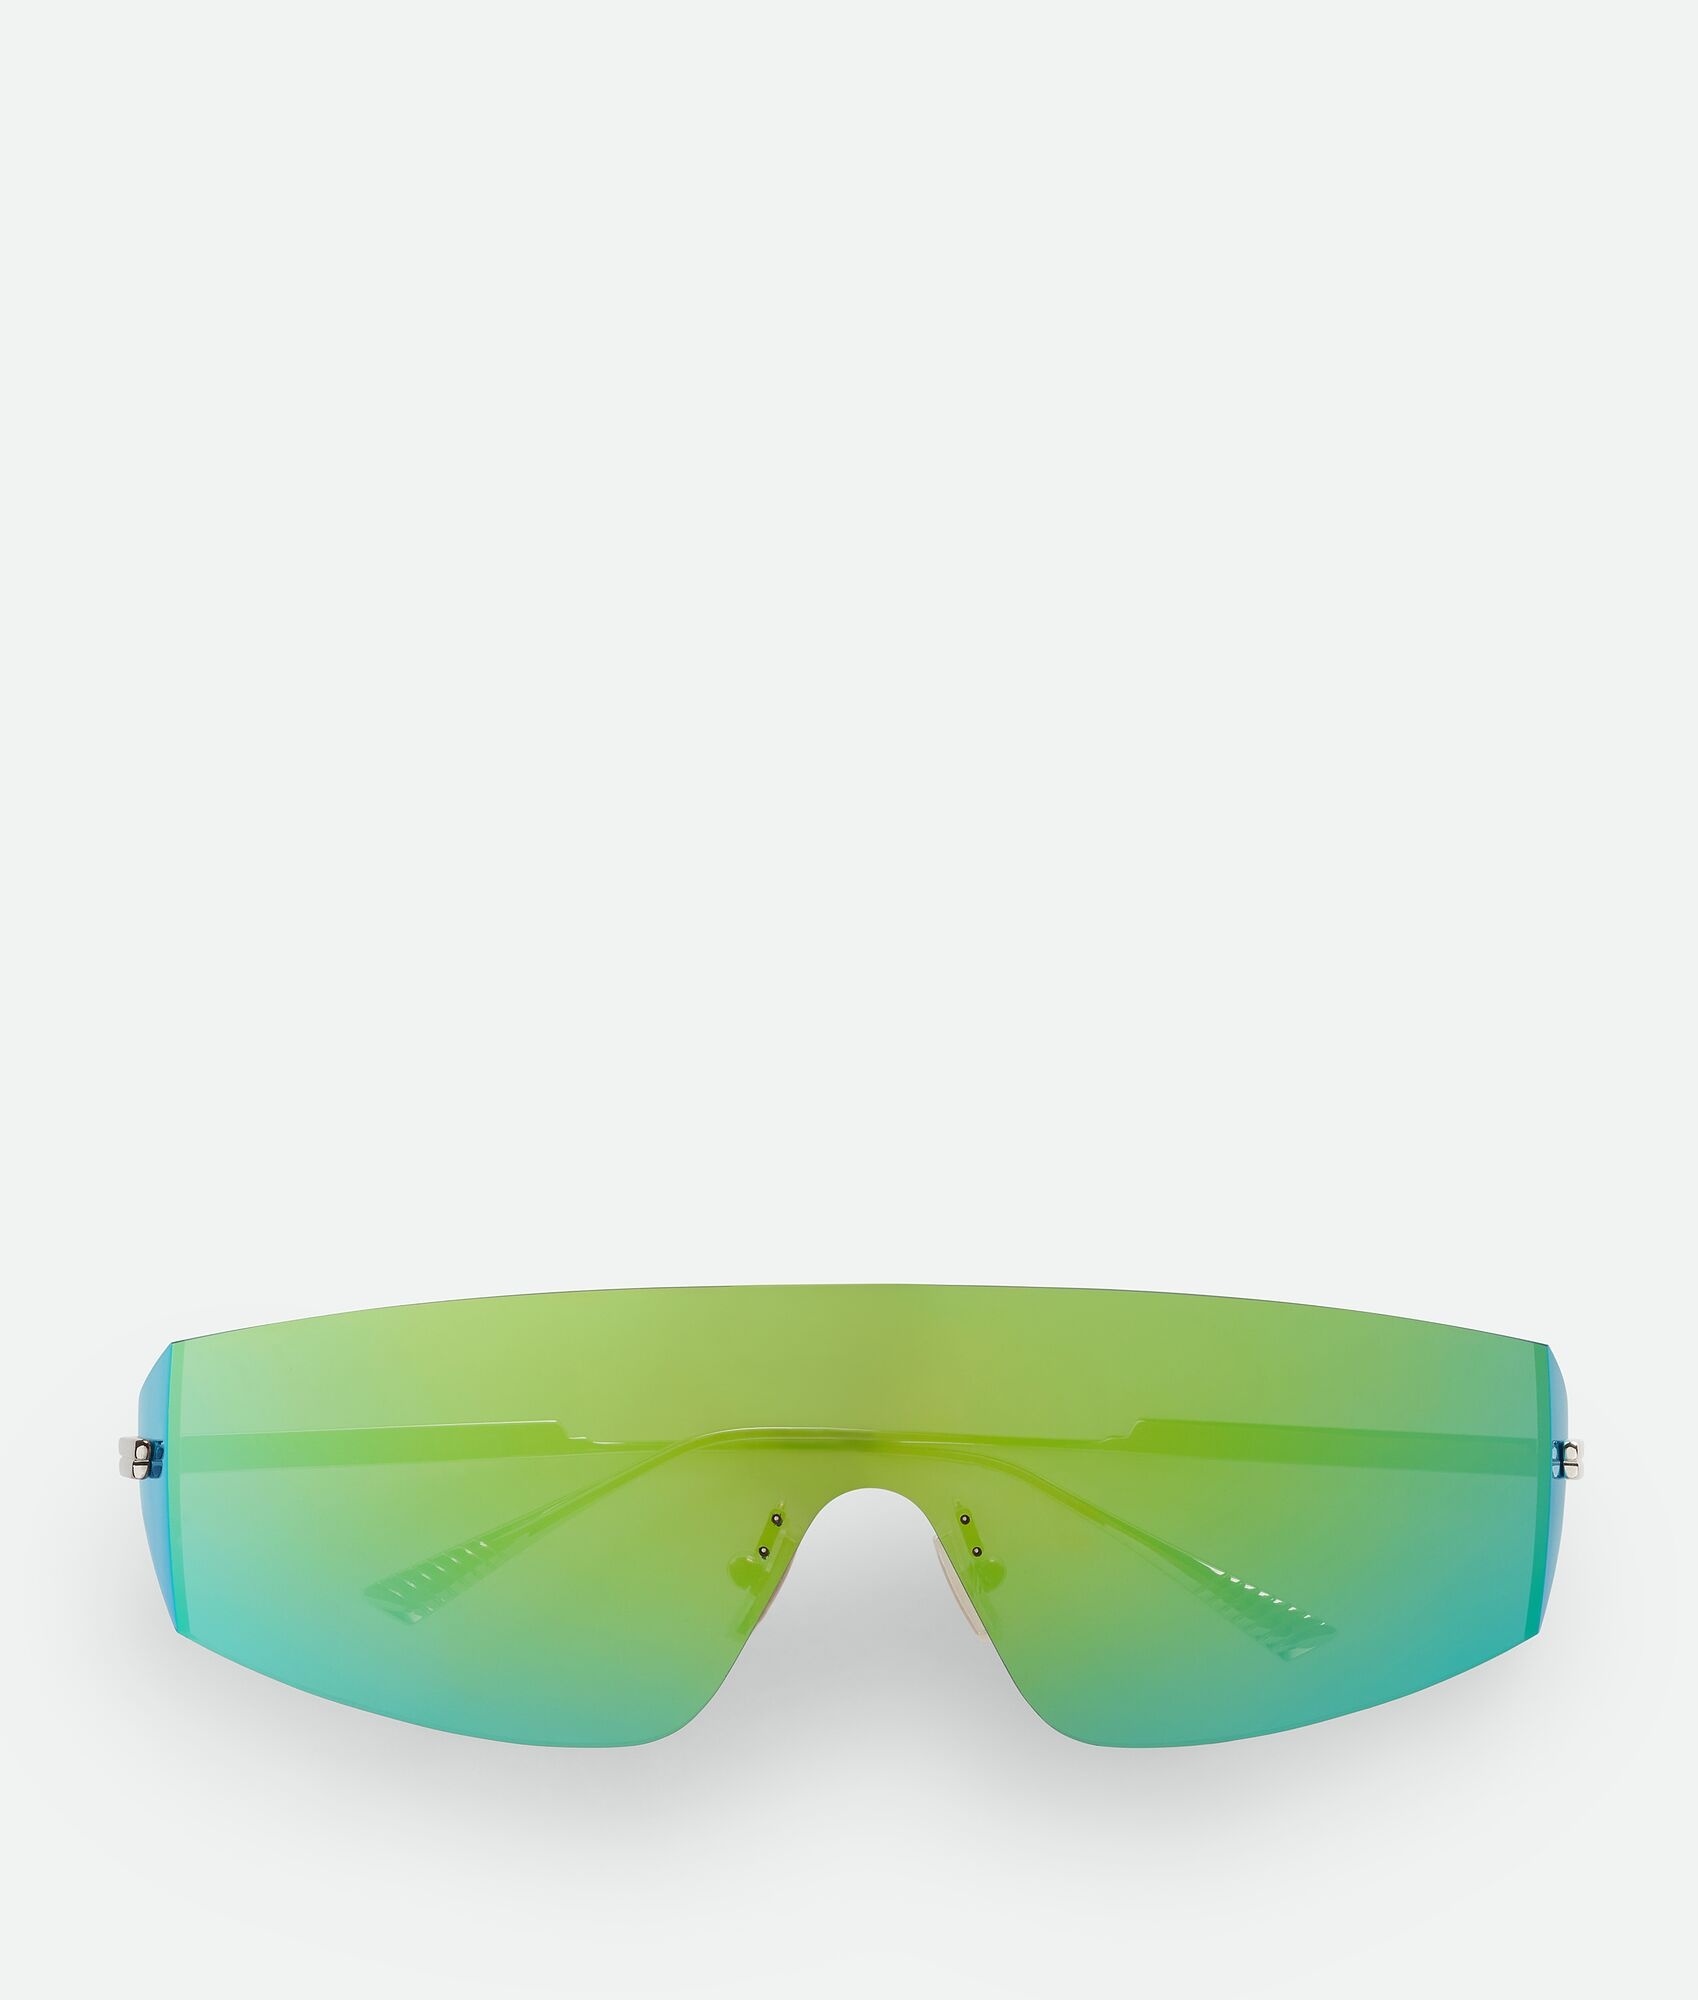 Futuristic Shield Sunglasses - 1